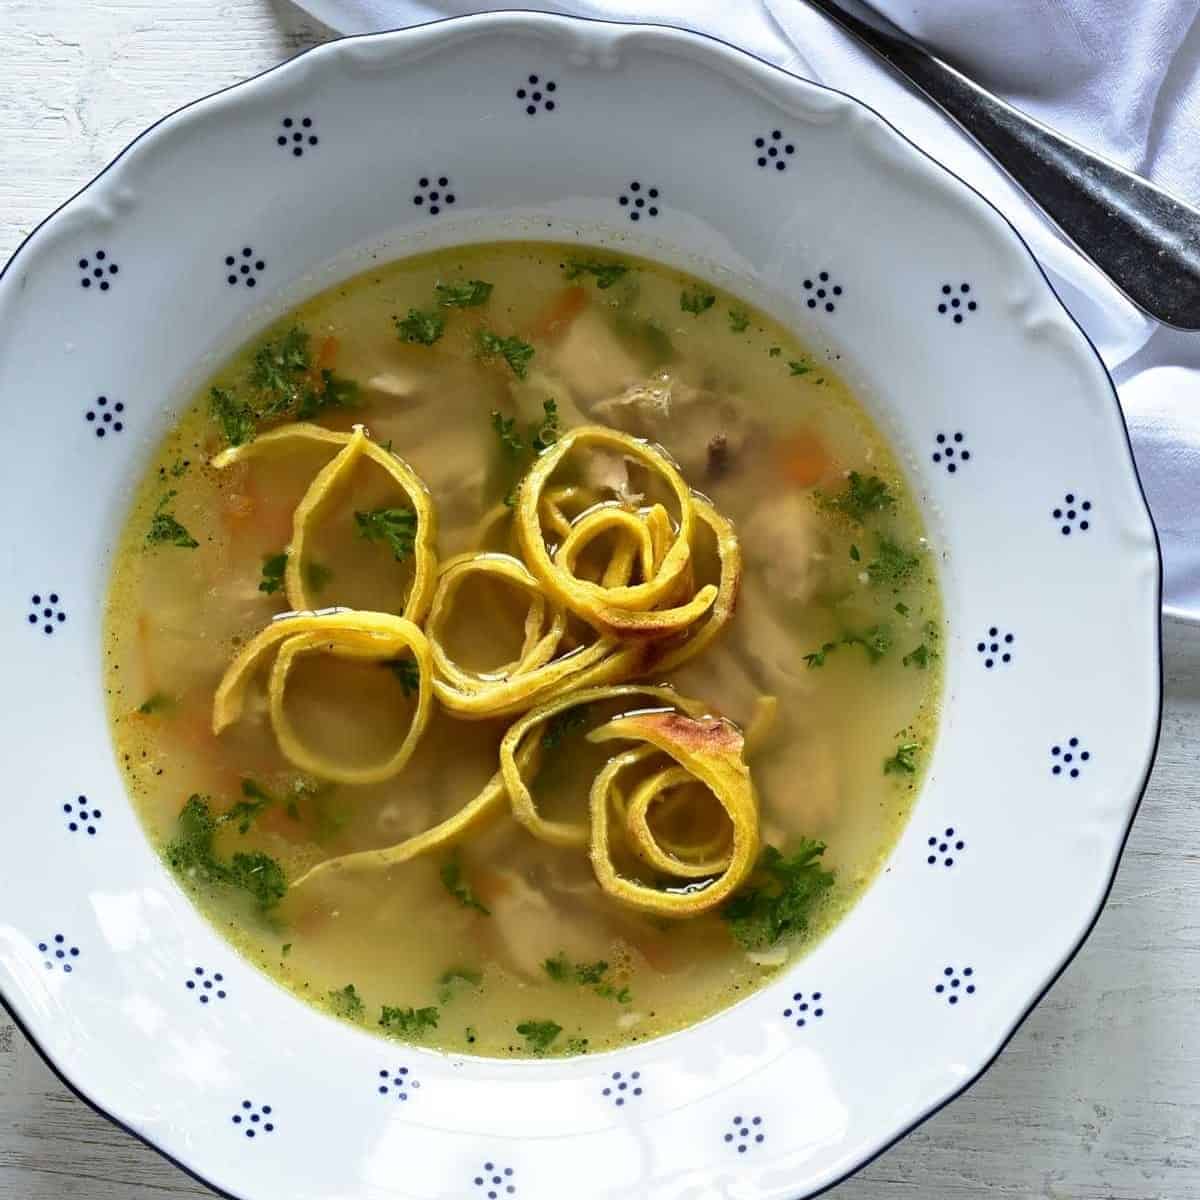 A clear soup served with celestýnské nudle (noodles).